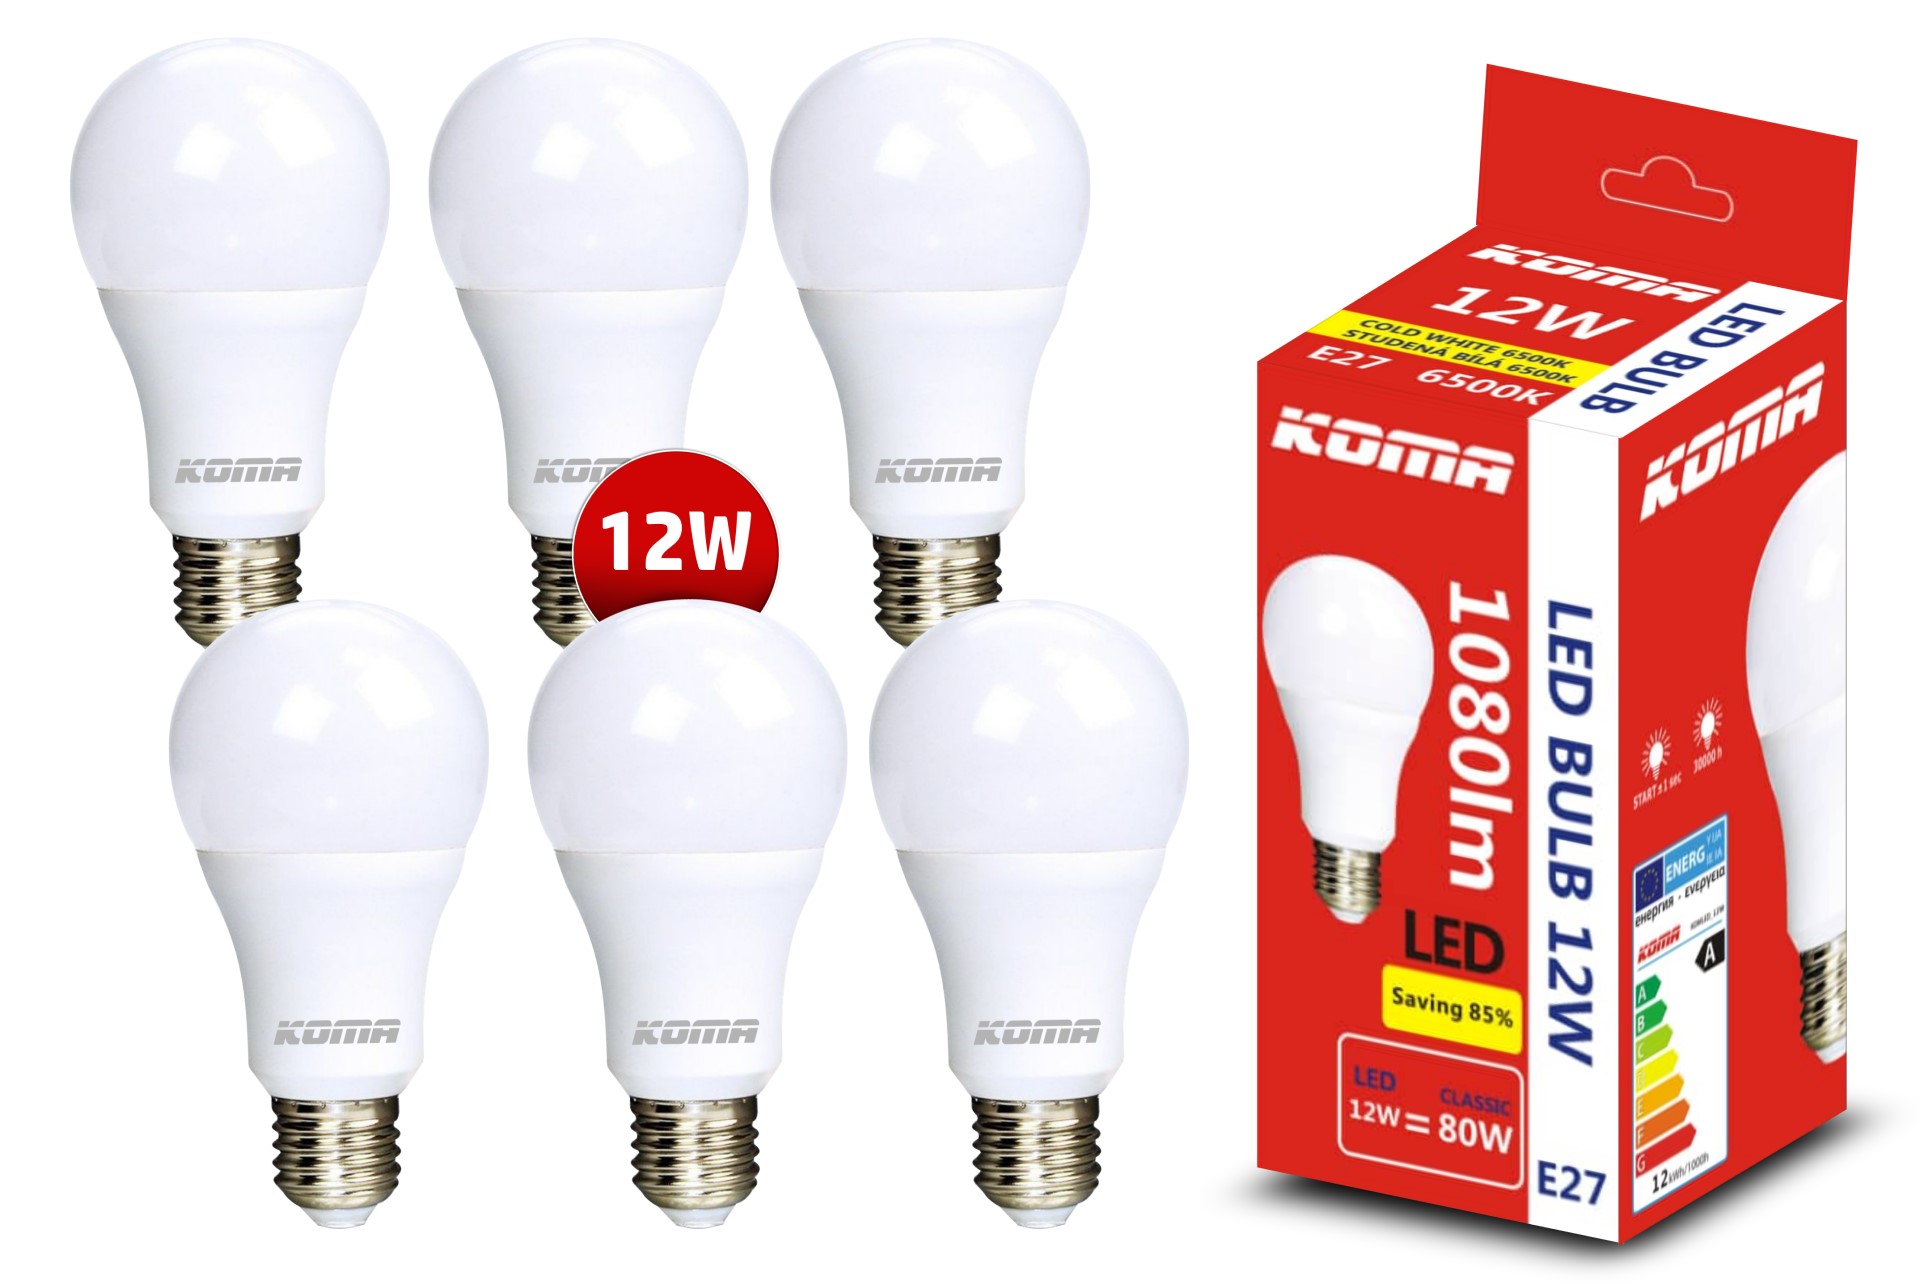 Sada 6ks LED žárovek KOMA E27 12W, 230V, 1080lm, 20000h, 6500K studená bílá